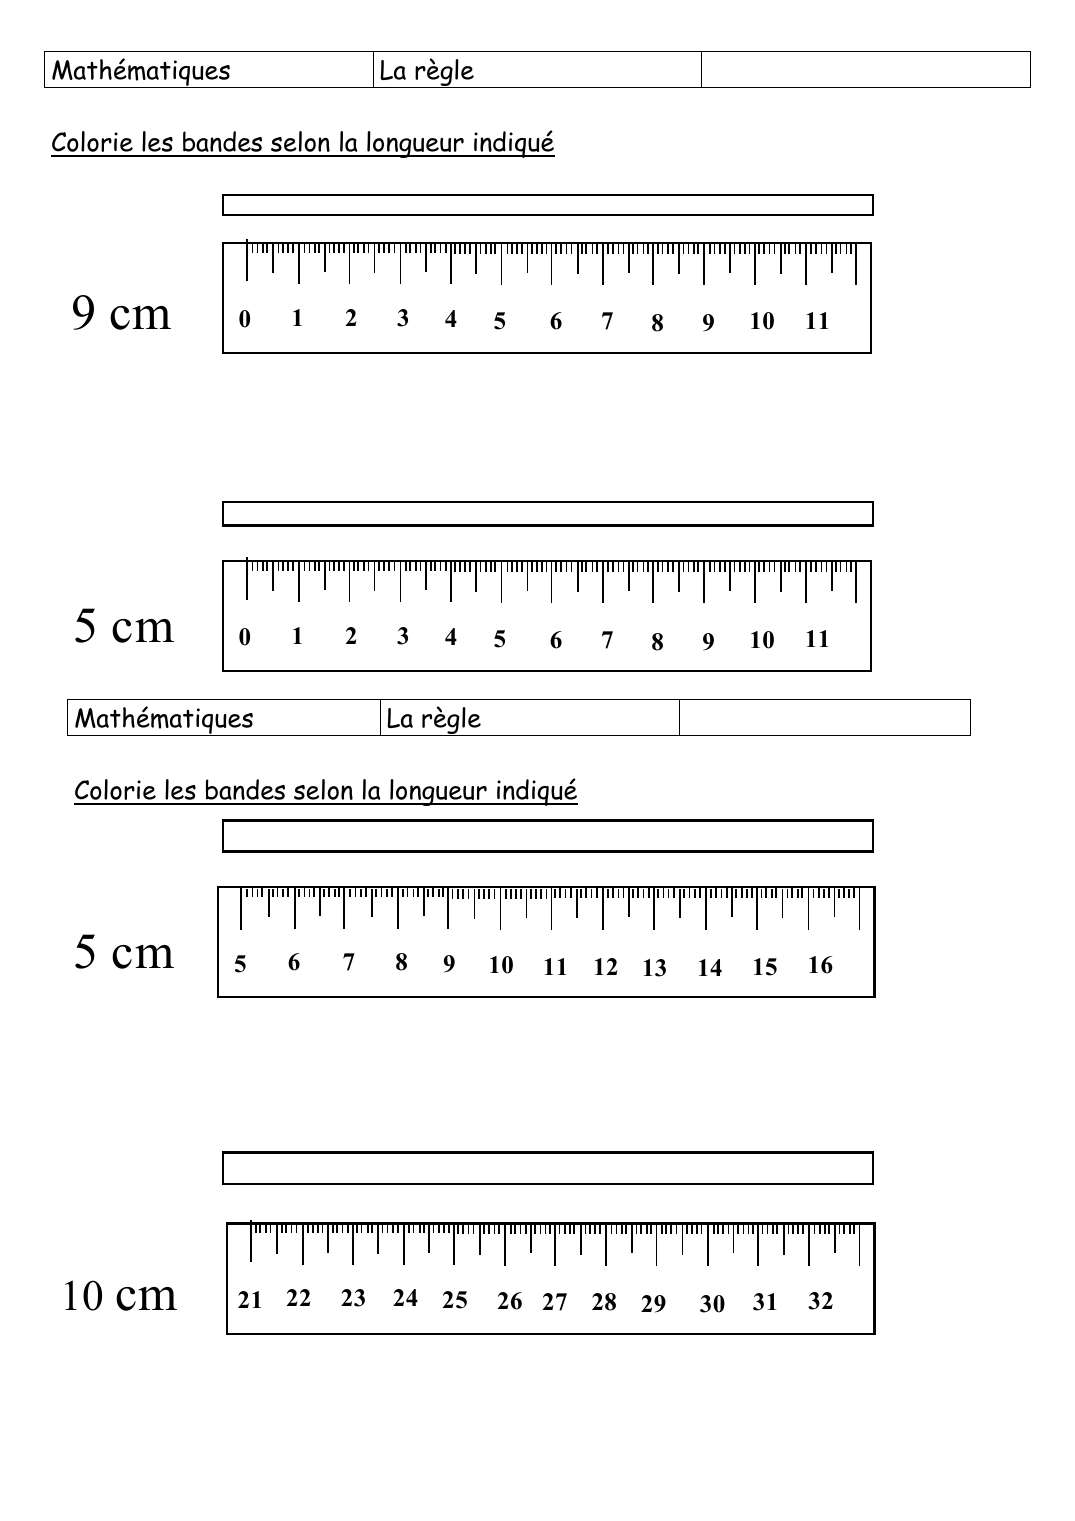 Prévisualisation du document MathématiquesLa règleColorie les bandes selon la longueur indiqué9 cm012345678910115 cm0123456789101111